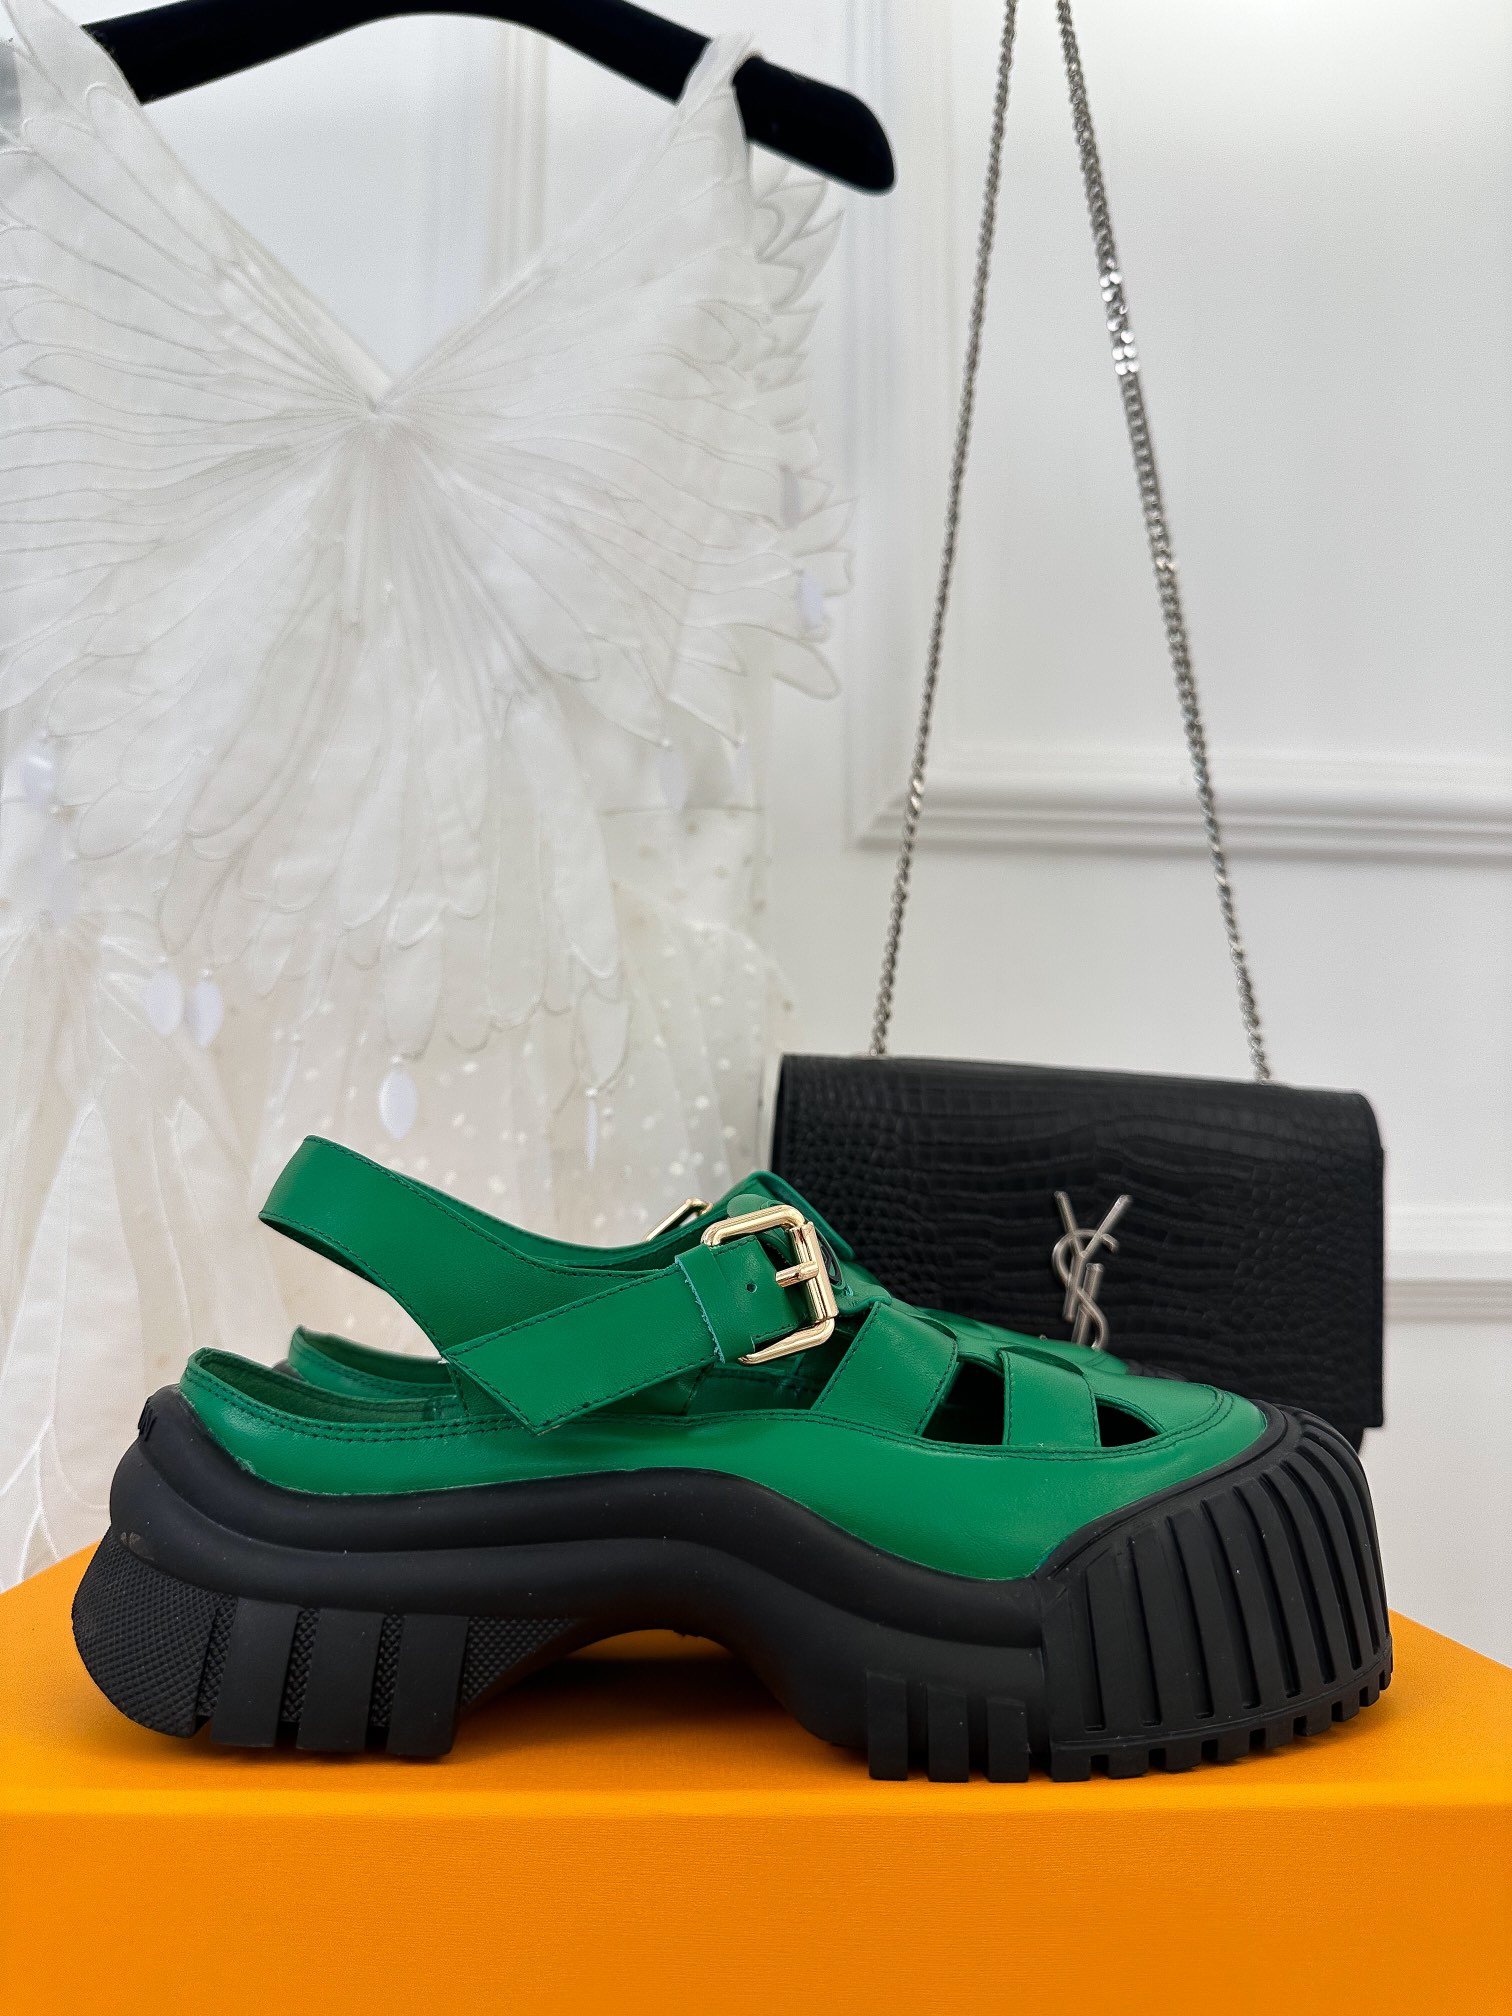 Sandals on platform 5 cm green